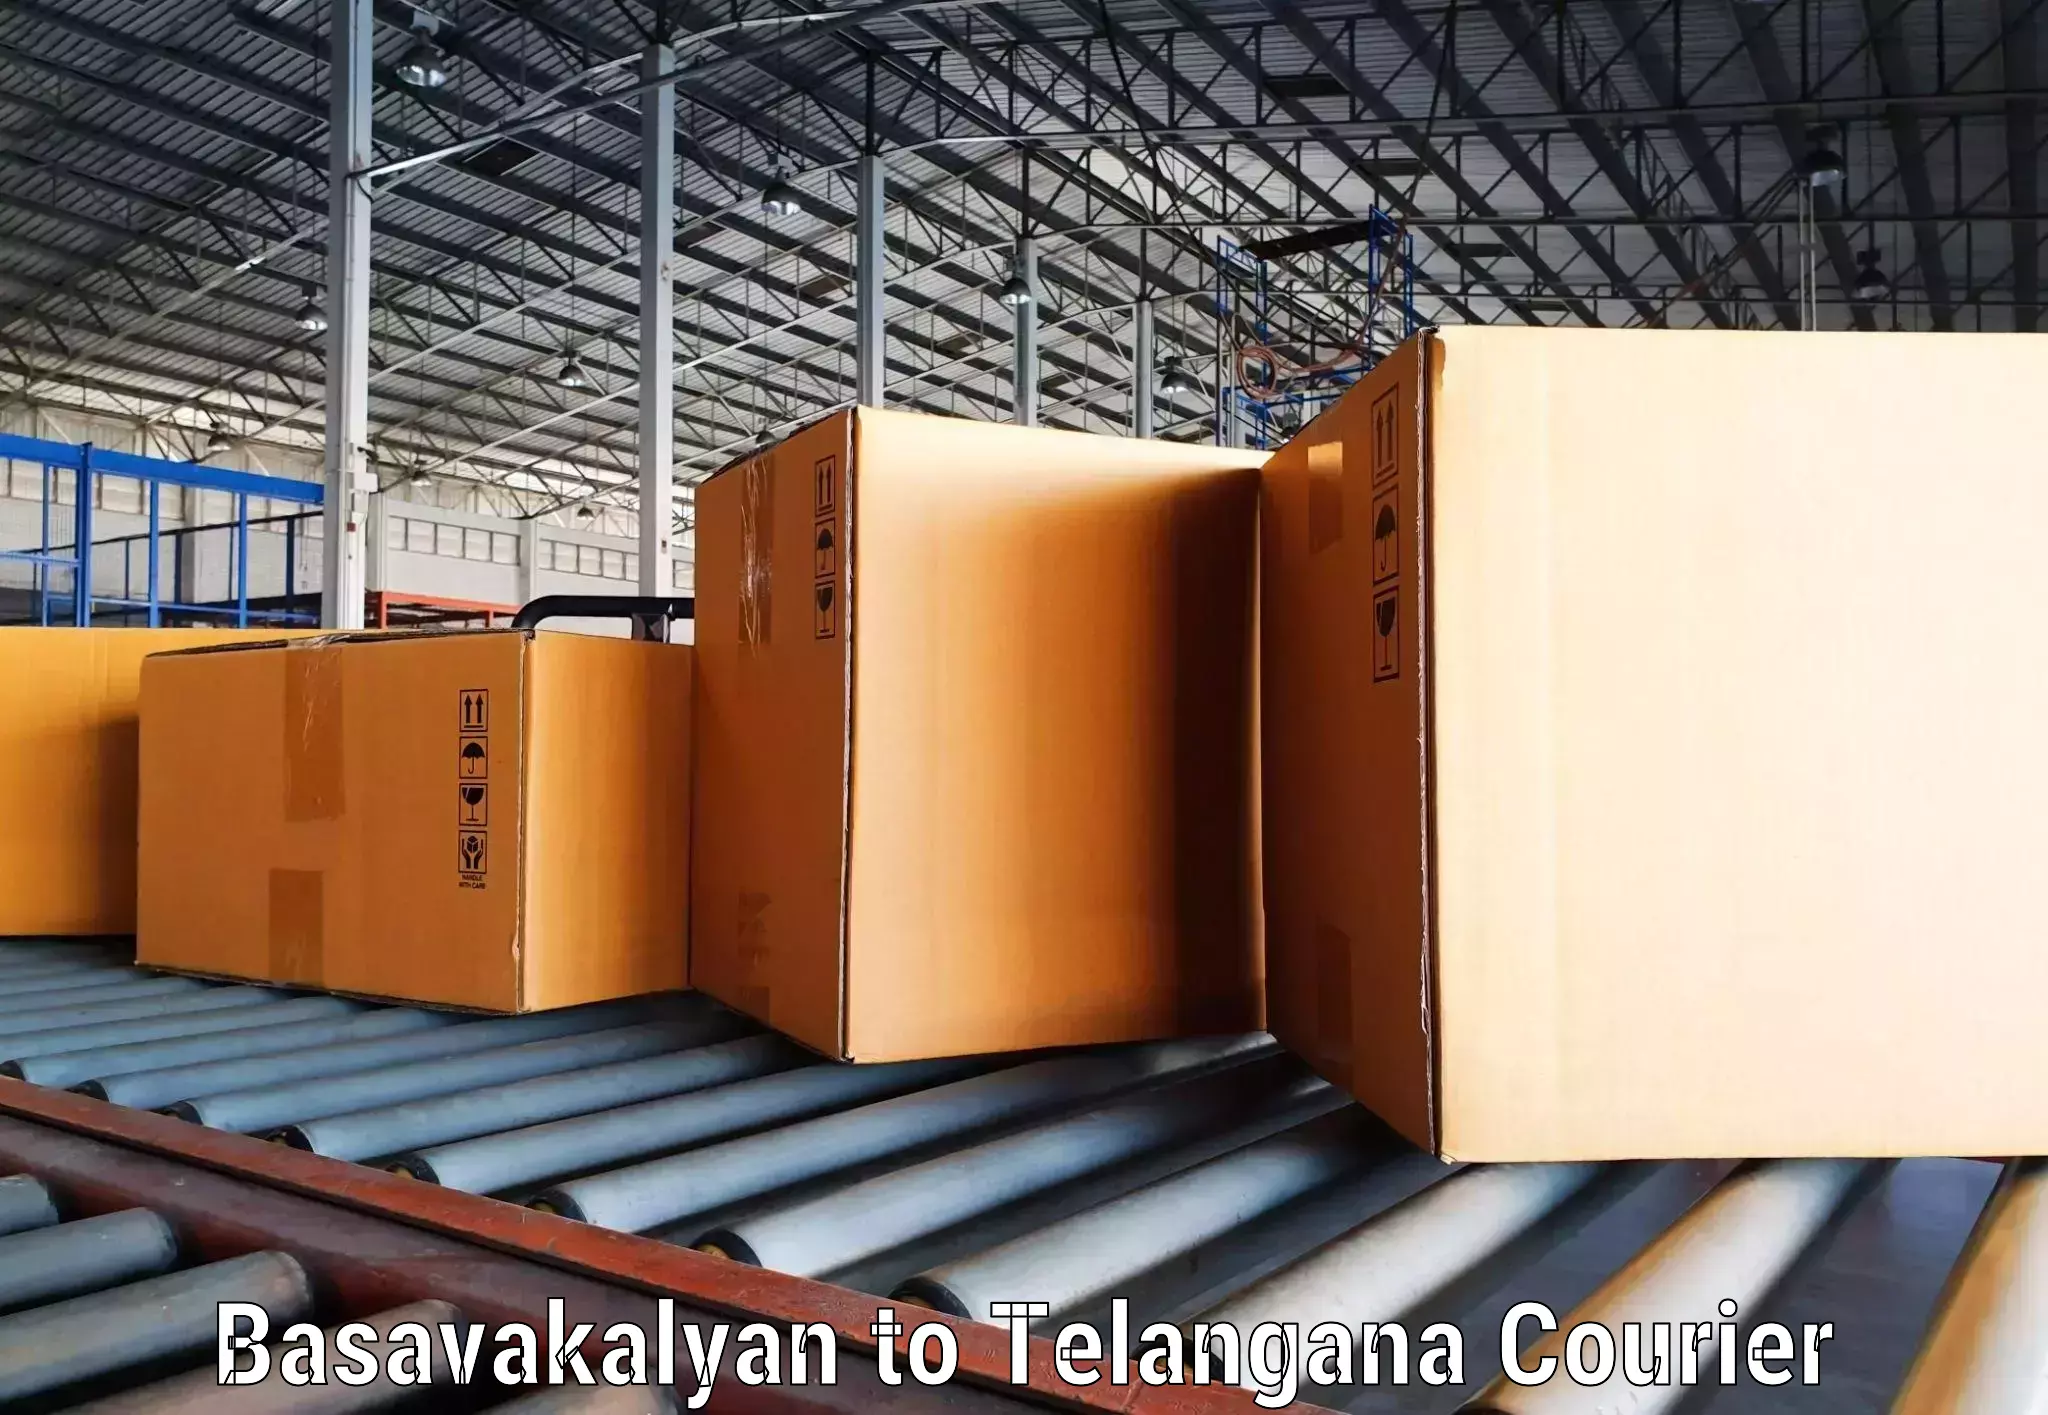 High-capacity shipping options Basavakalyan to Pathipaka